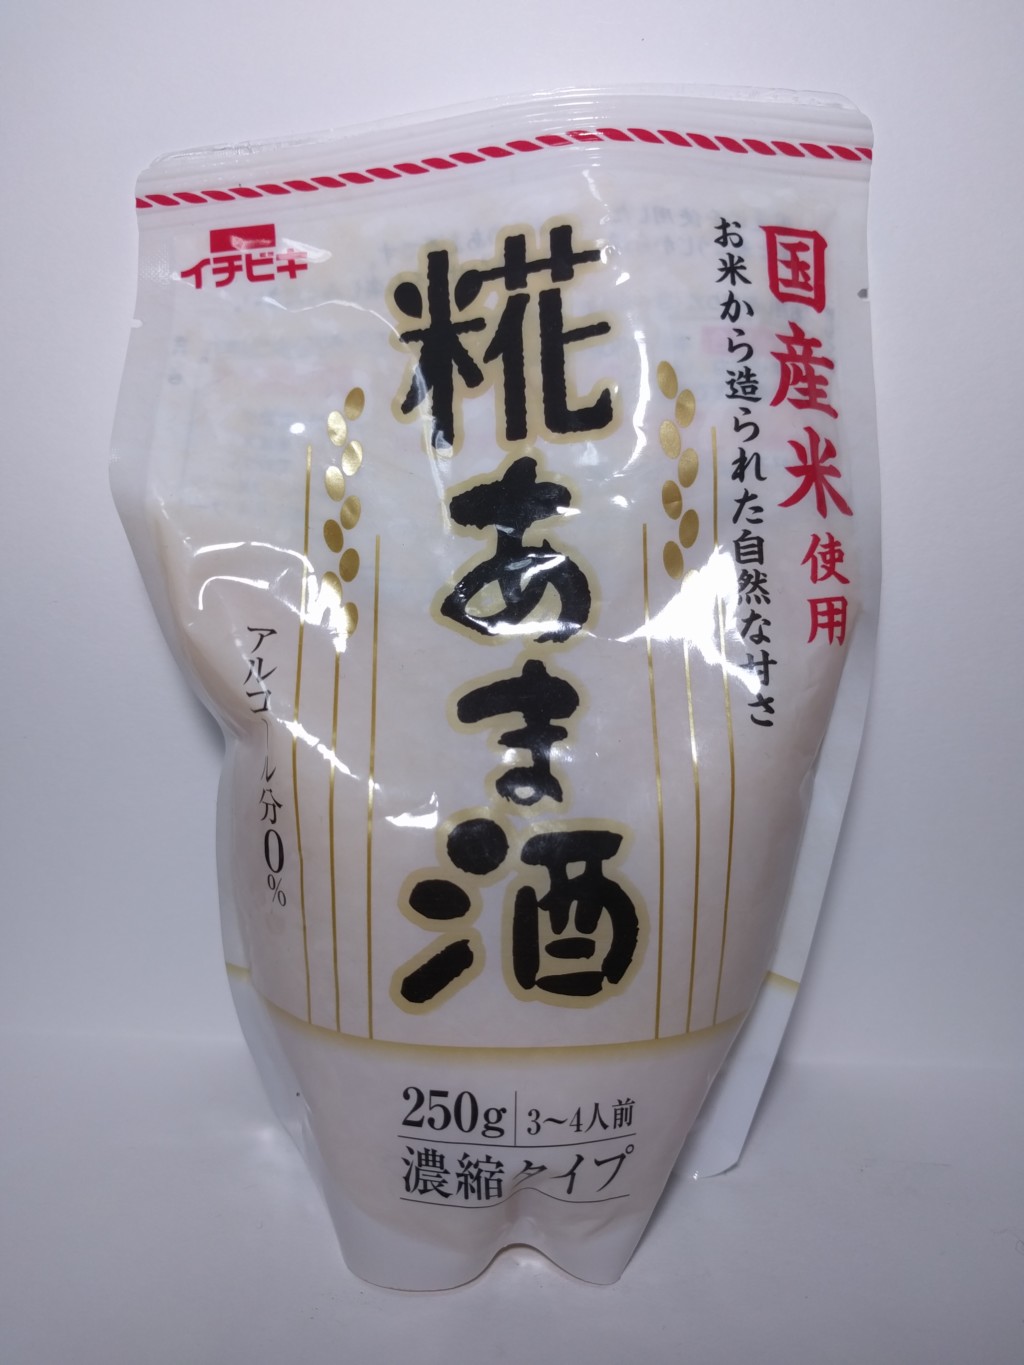 イチビキの濃縮タイプの米麹甘酒『糀あま酒』